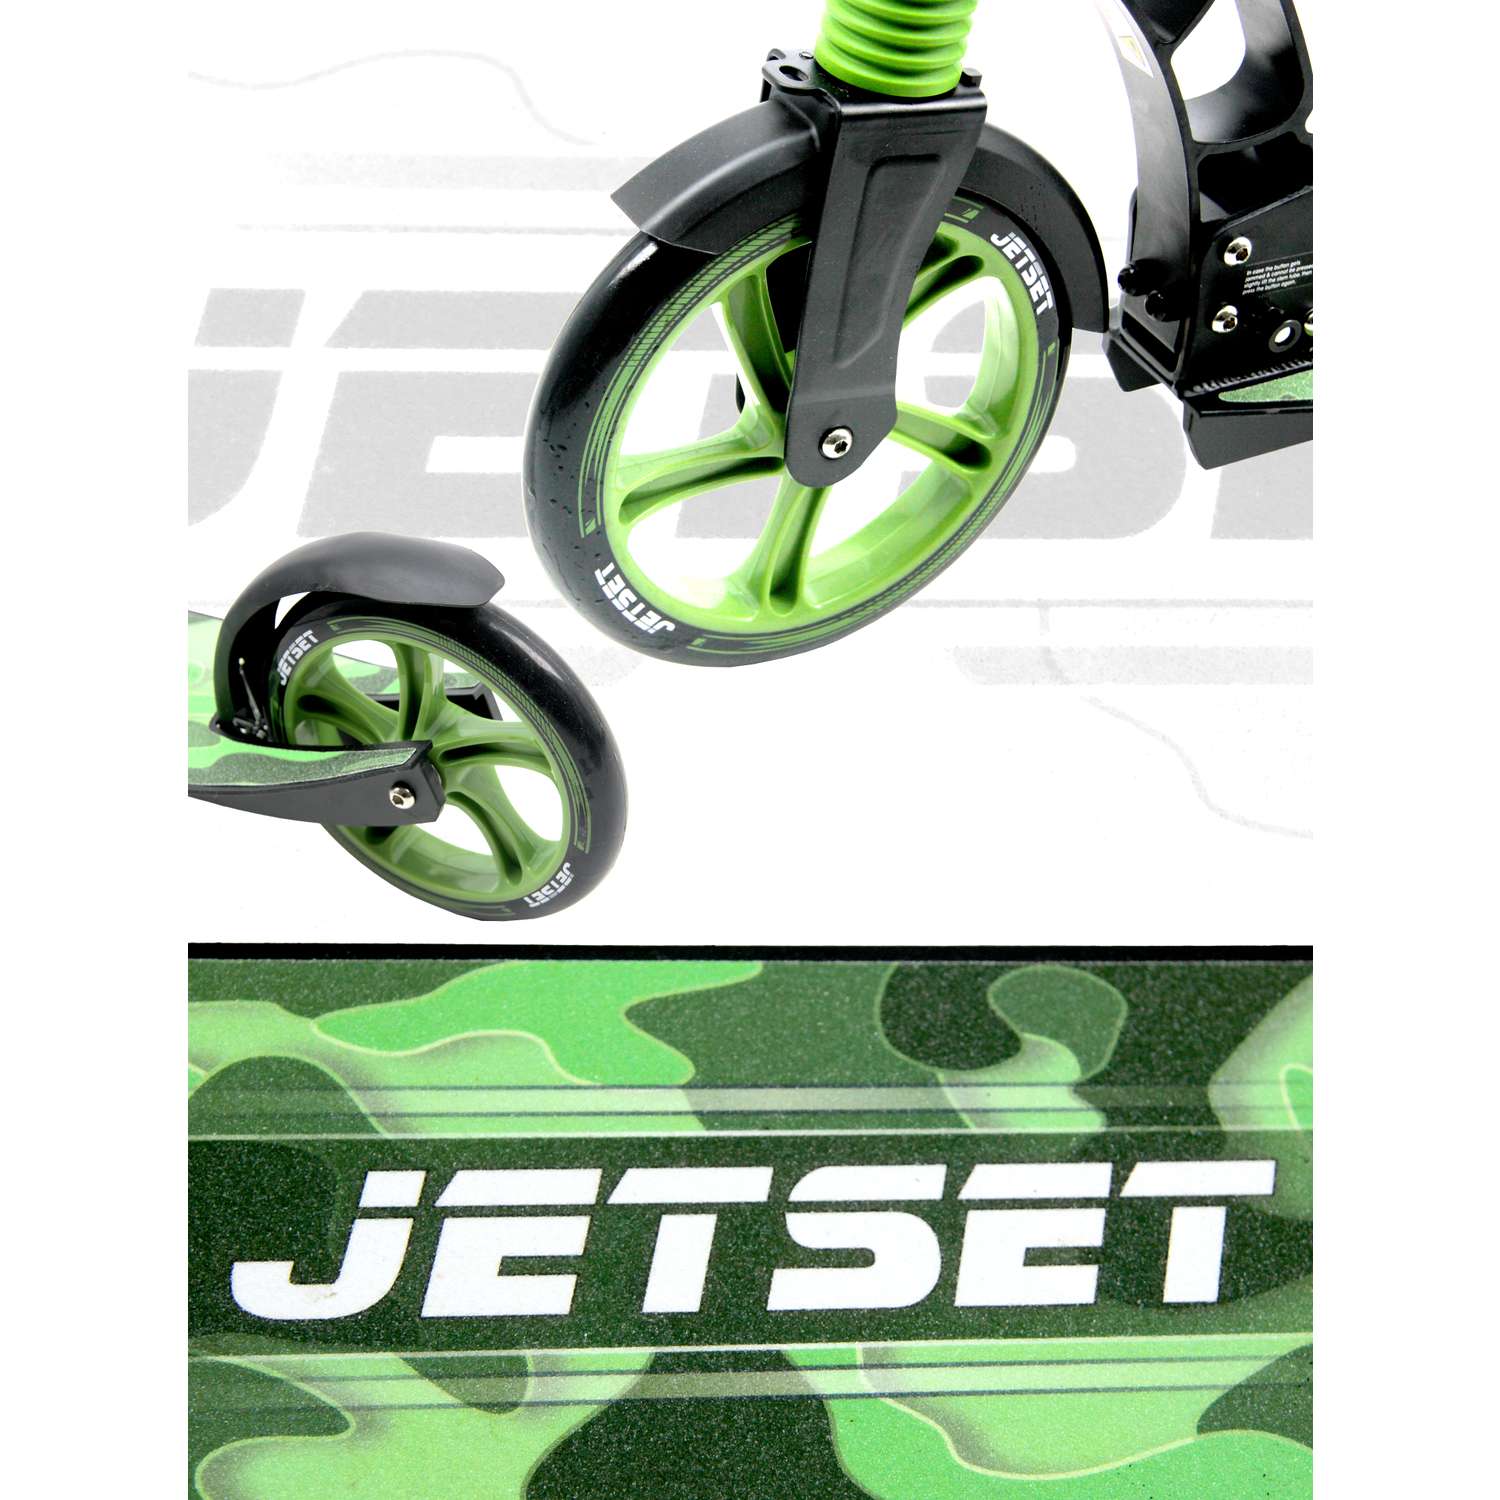 Самокат JETSET Городской складной двухколесный зелено-черный - фото 2